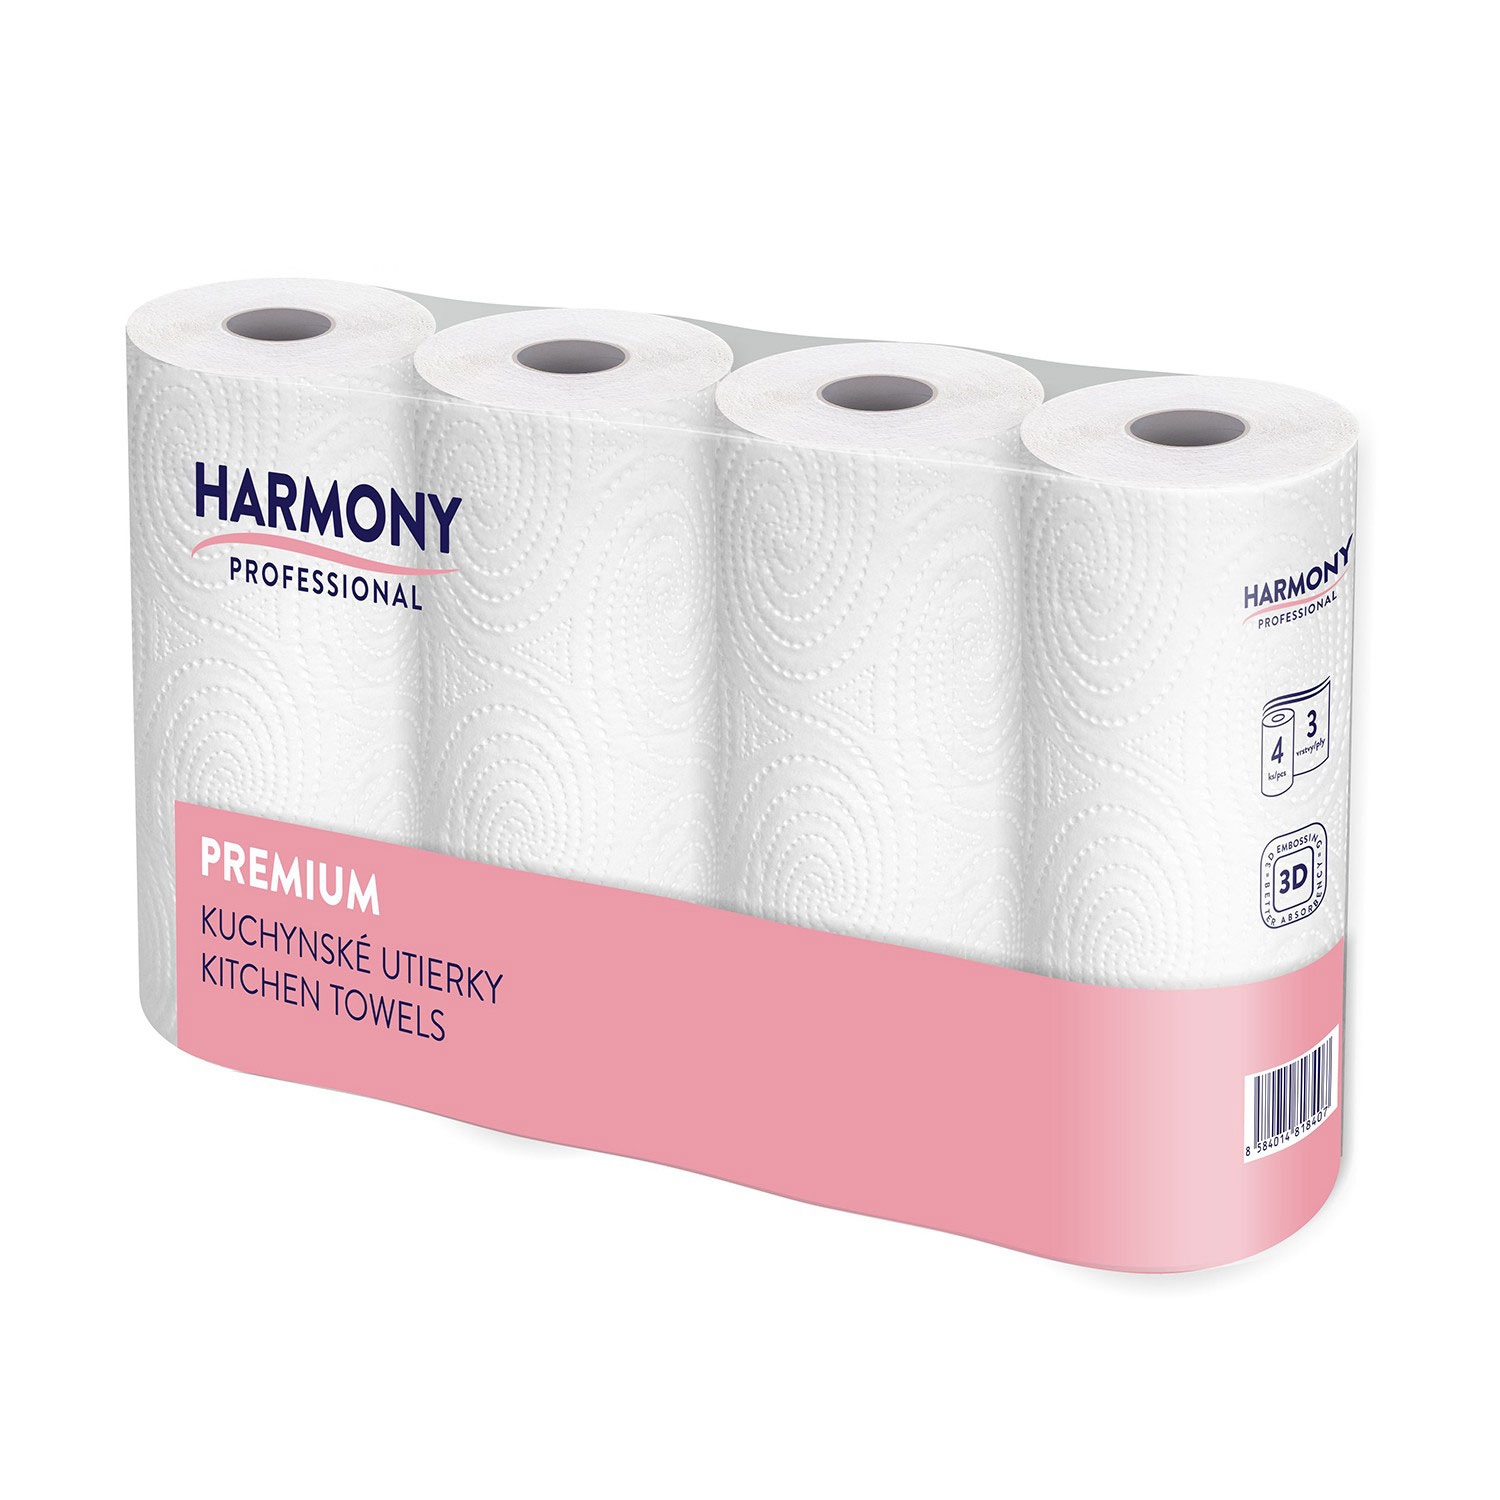 Kuchyňské papírové utěrky Harmony Professional, 3 vrstvy, cena za 1bal/4ks